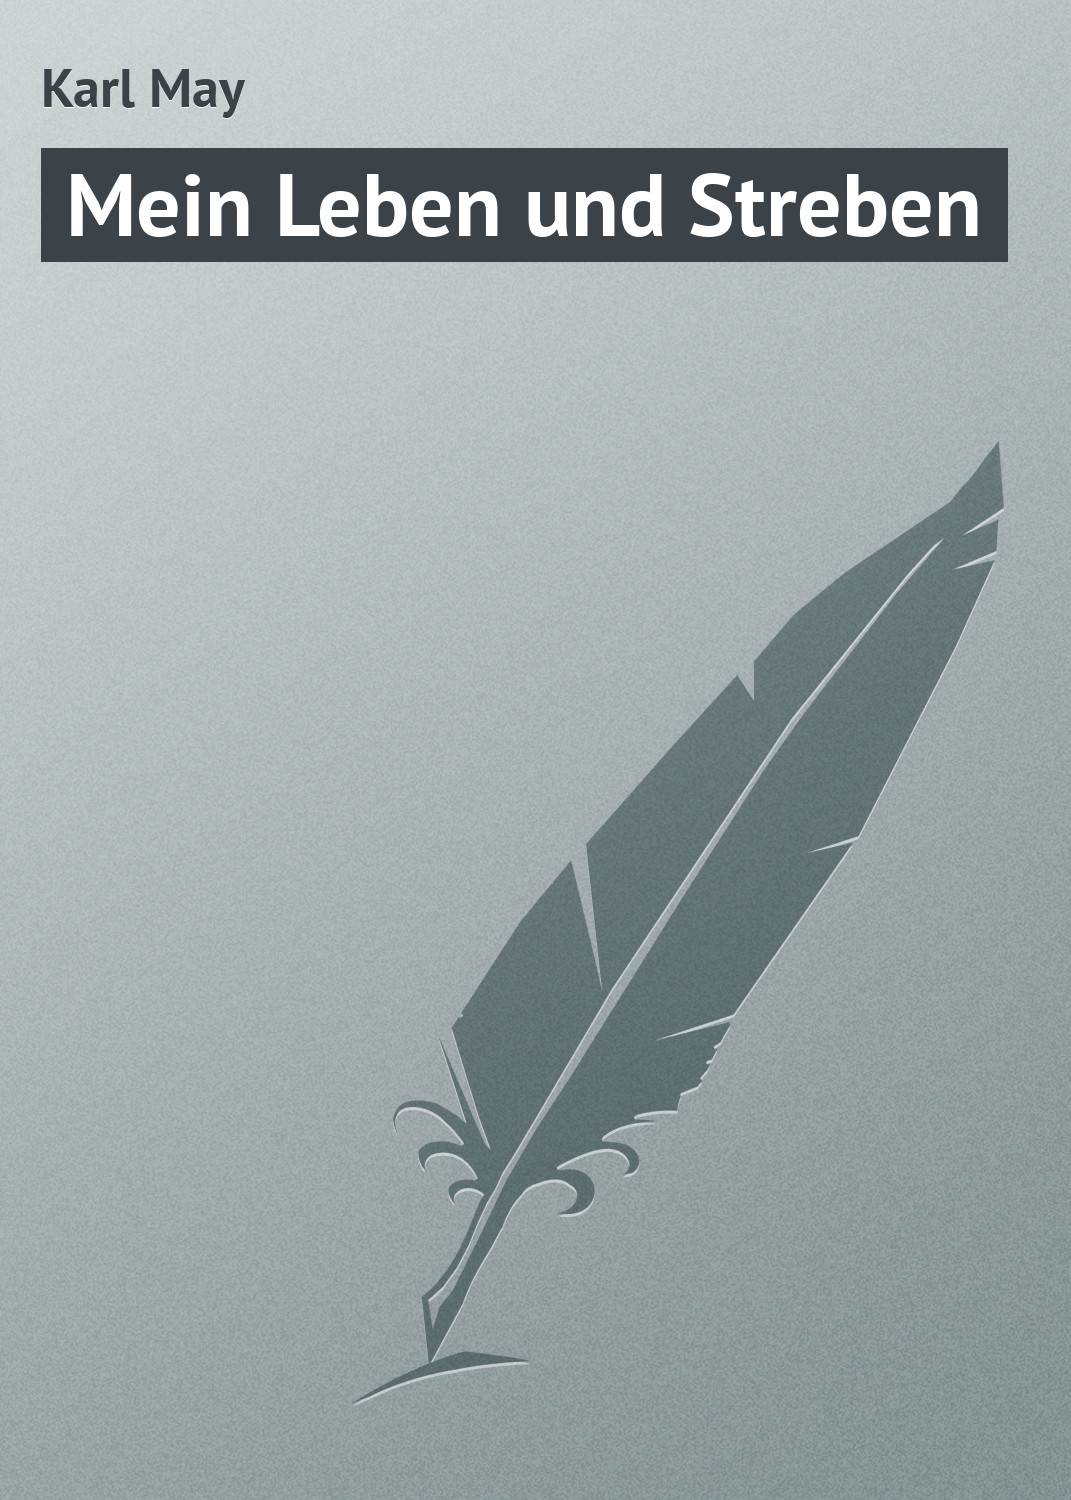 Книга Mein Leben und Streben из серии , созданная Karl May, может относится к жанру Классическая проза. Стоимость электронной книги Mein Leben und Streben с идентификатором 18405422 составляет 5.99 руб.